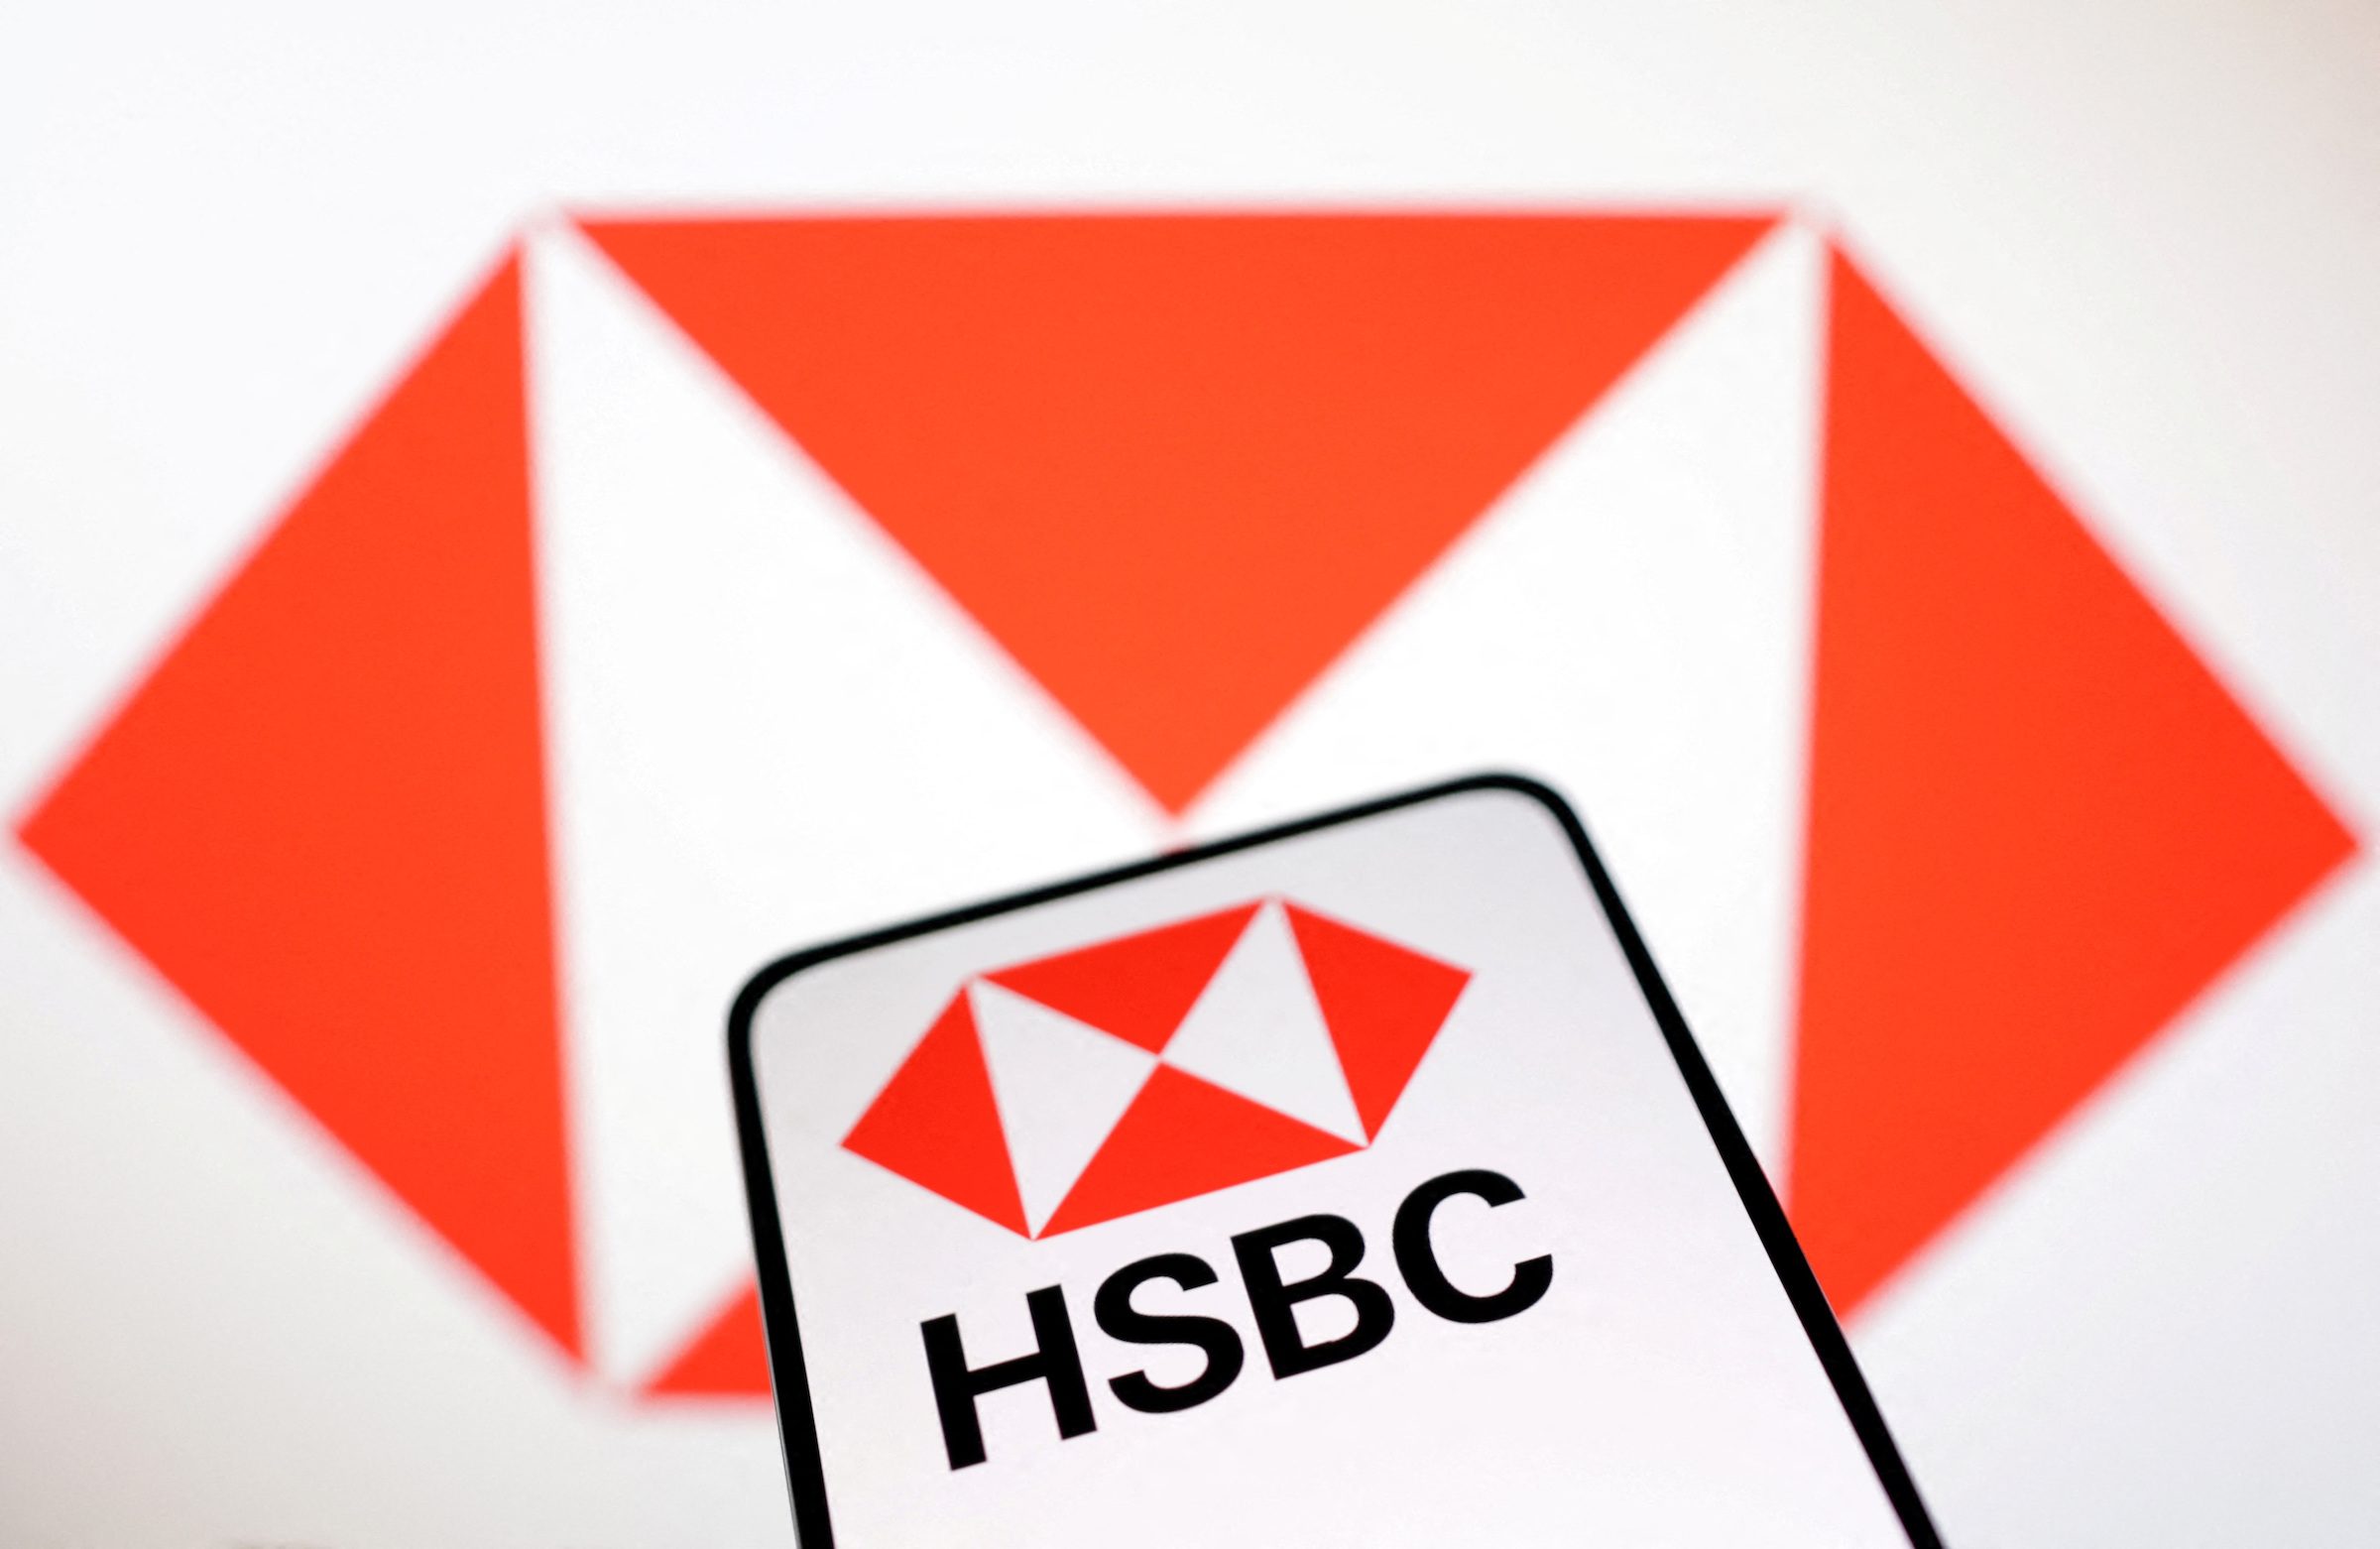 HSBC rescues British arm of stricken Silicon Valley Bank